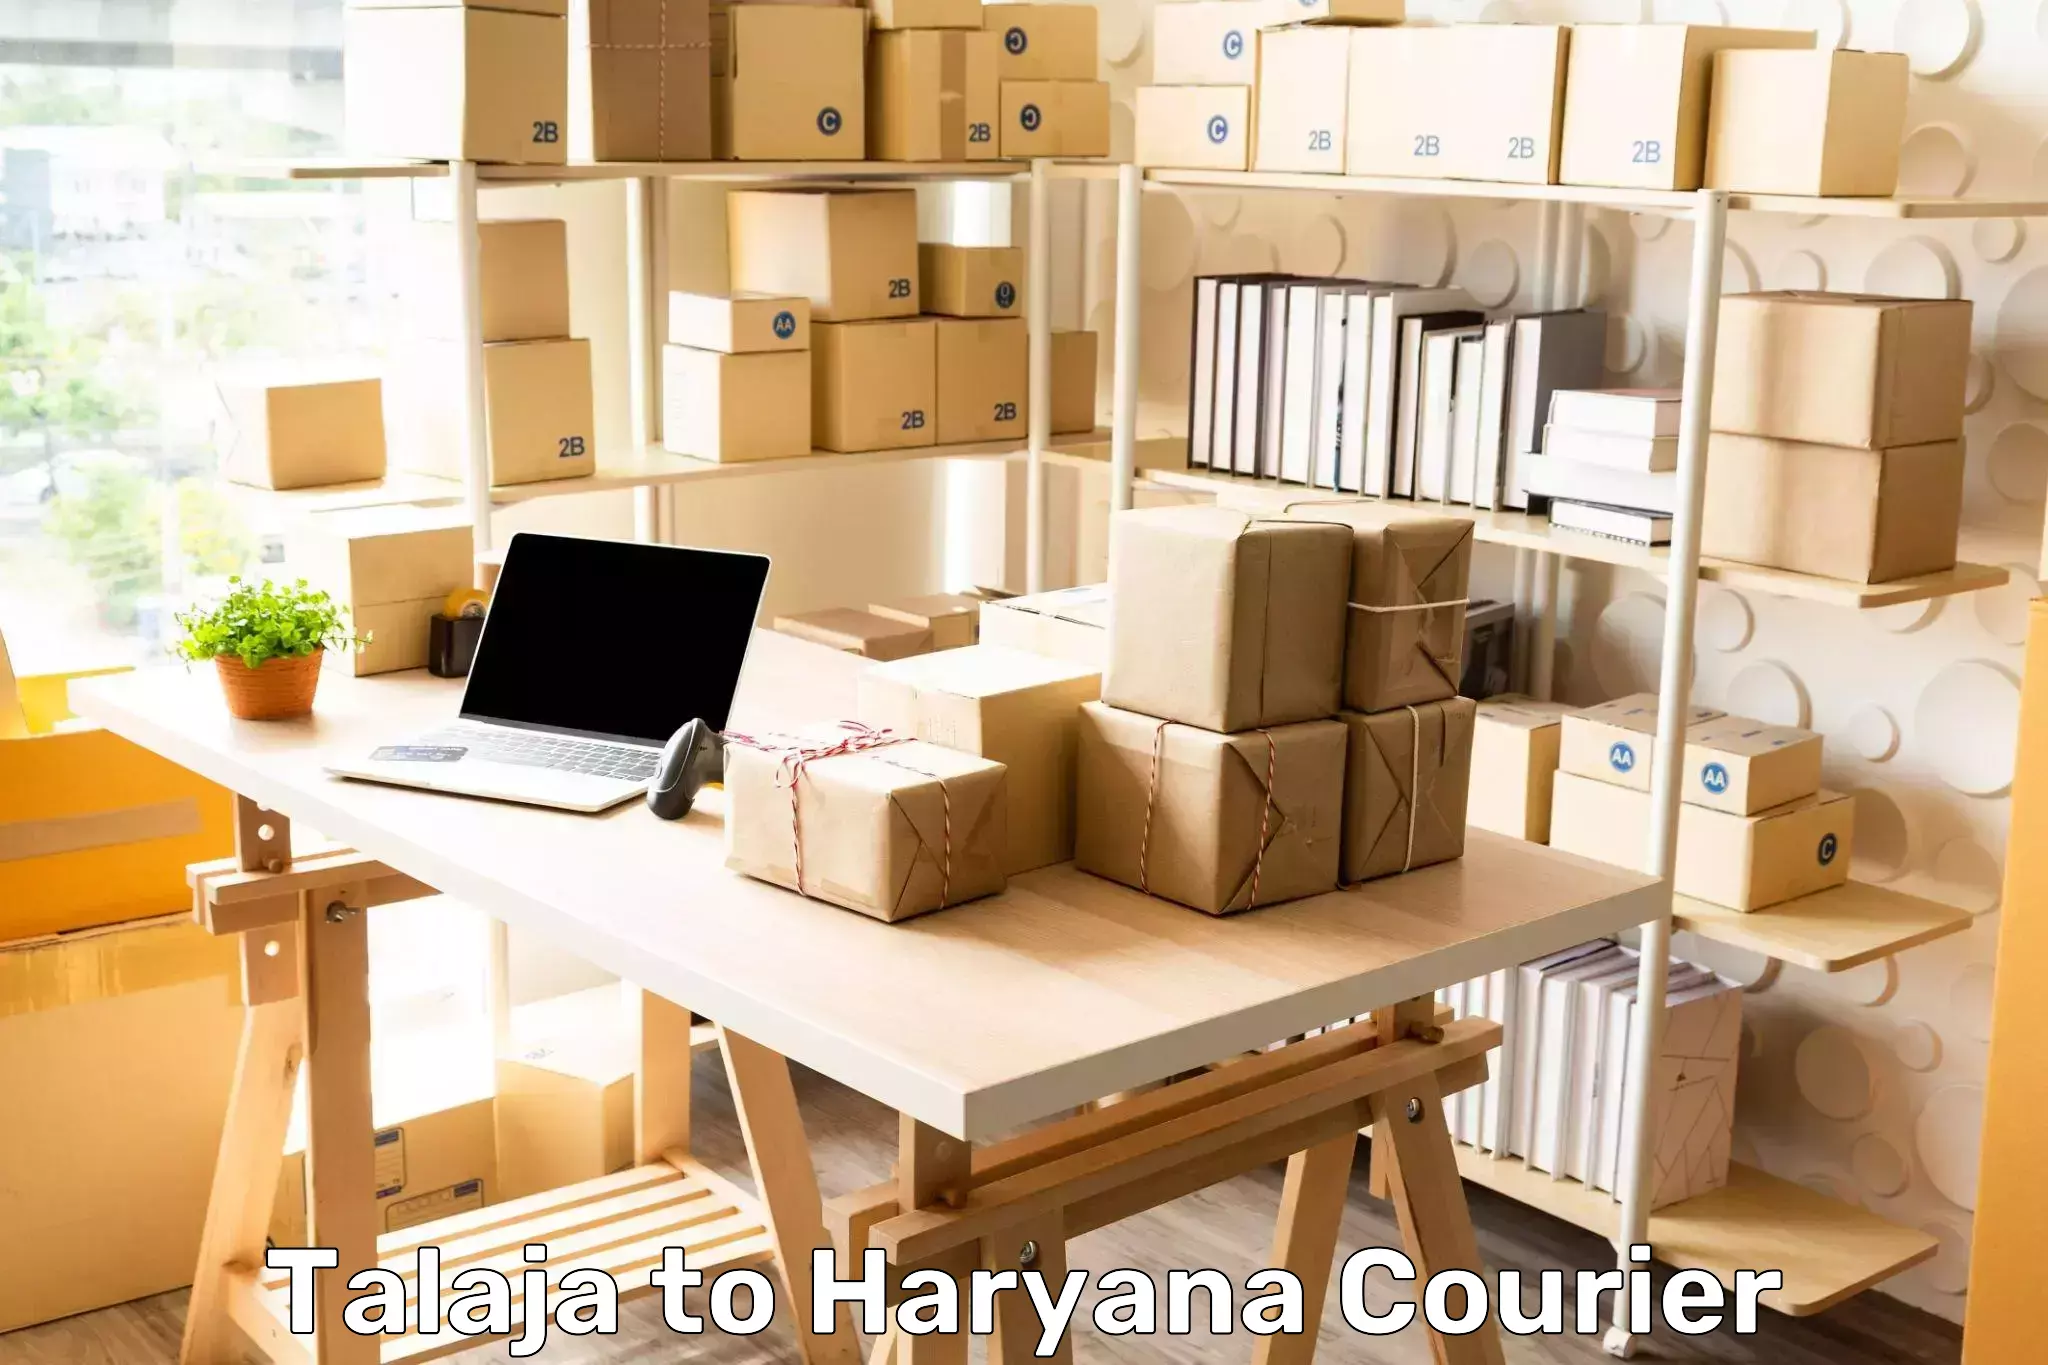 Express logistics service Talaja to Haryana